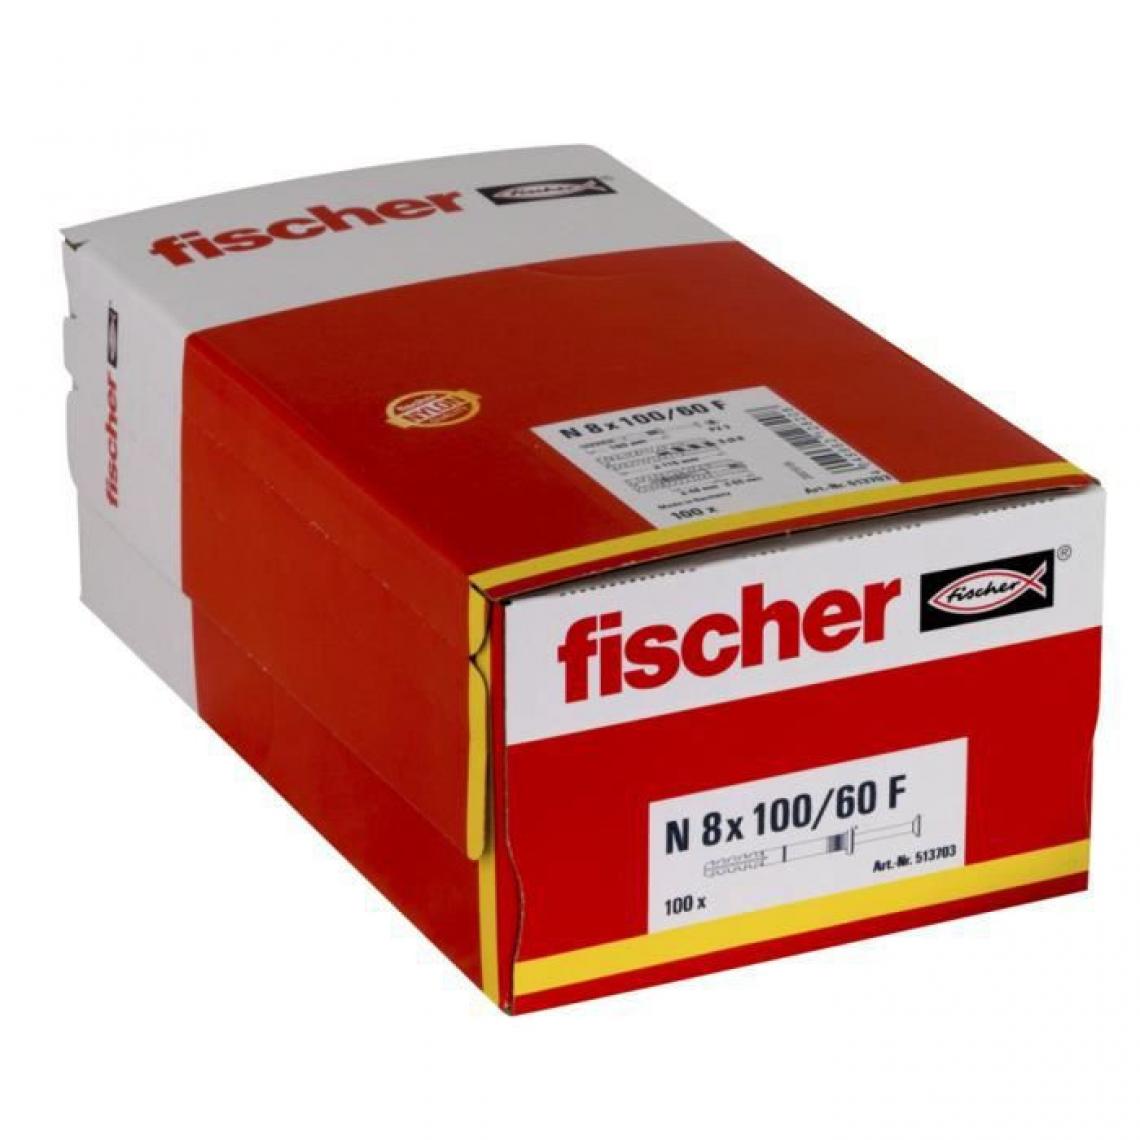 Fischer - FISCHER - Cheville clou NF 8x100/60 avec collerette épaisse et clou tete fraisée - Boîte de 100 - Cheville